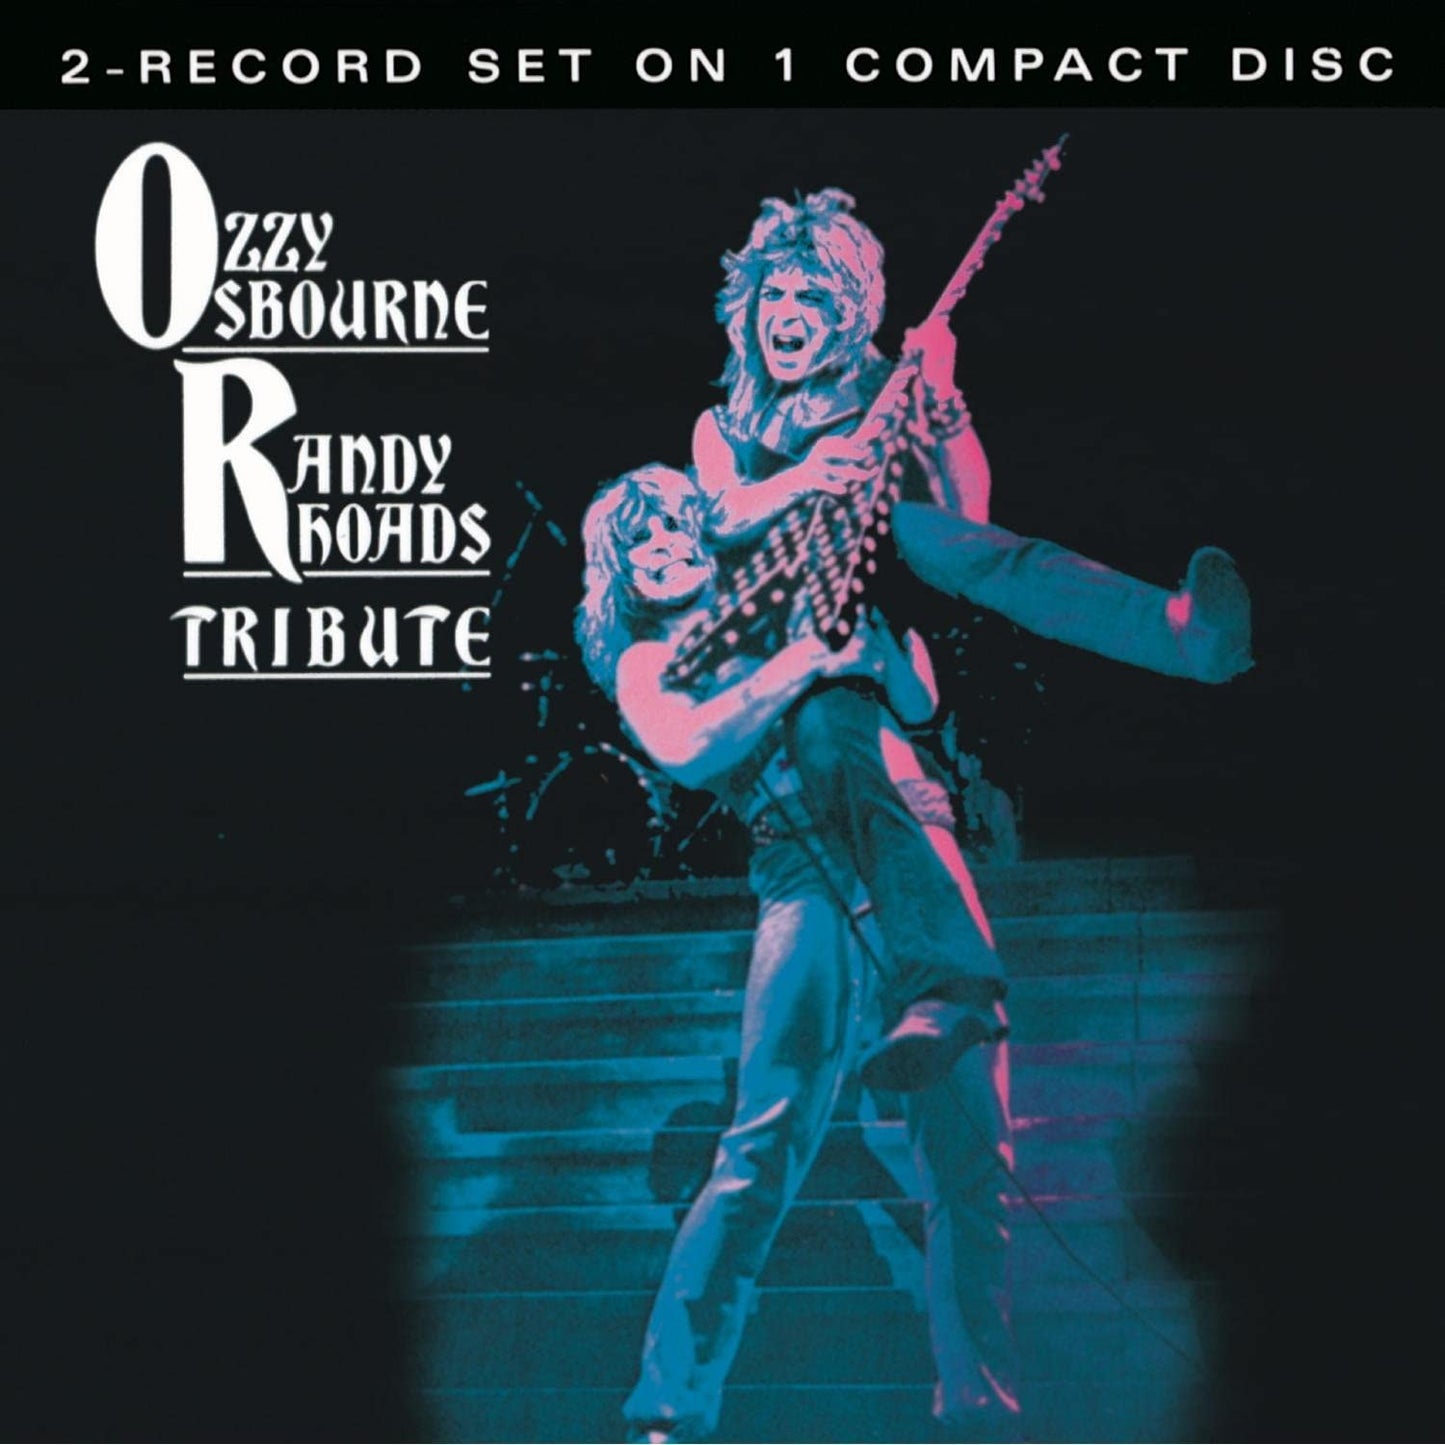 CD - Ozzy Osbourne - Tribute